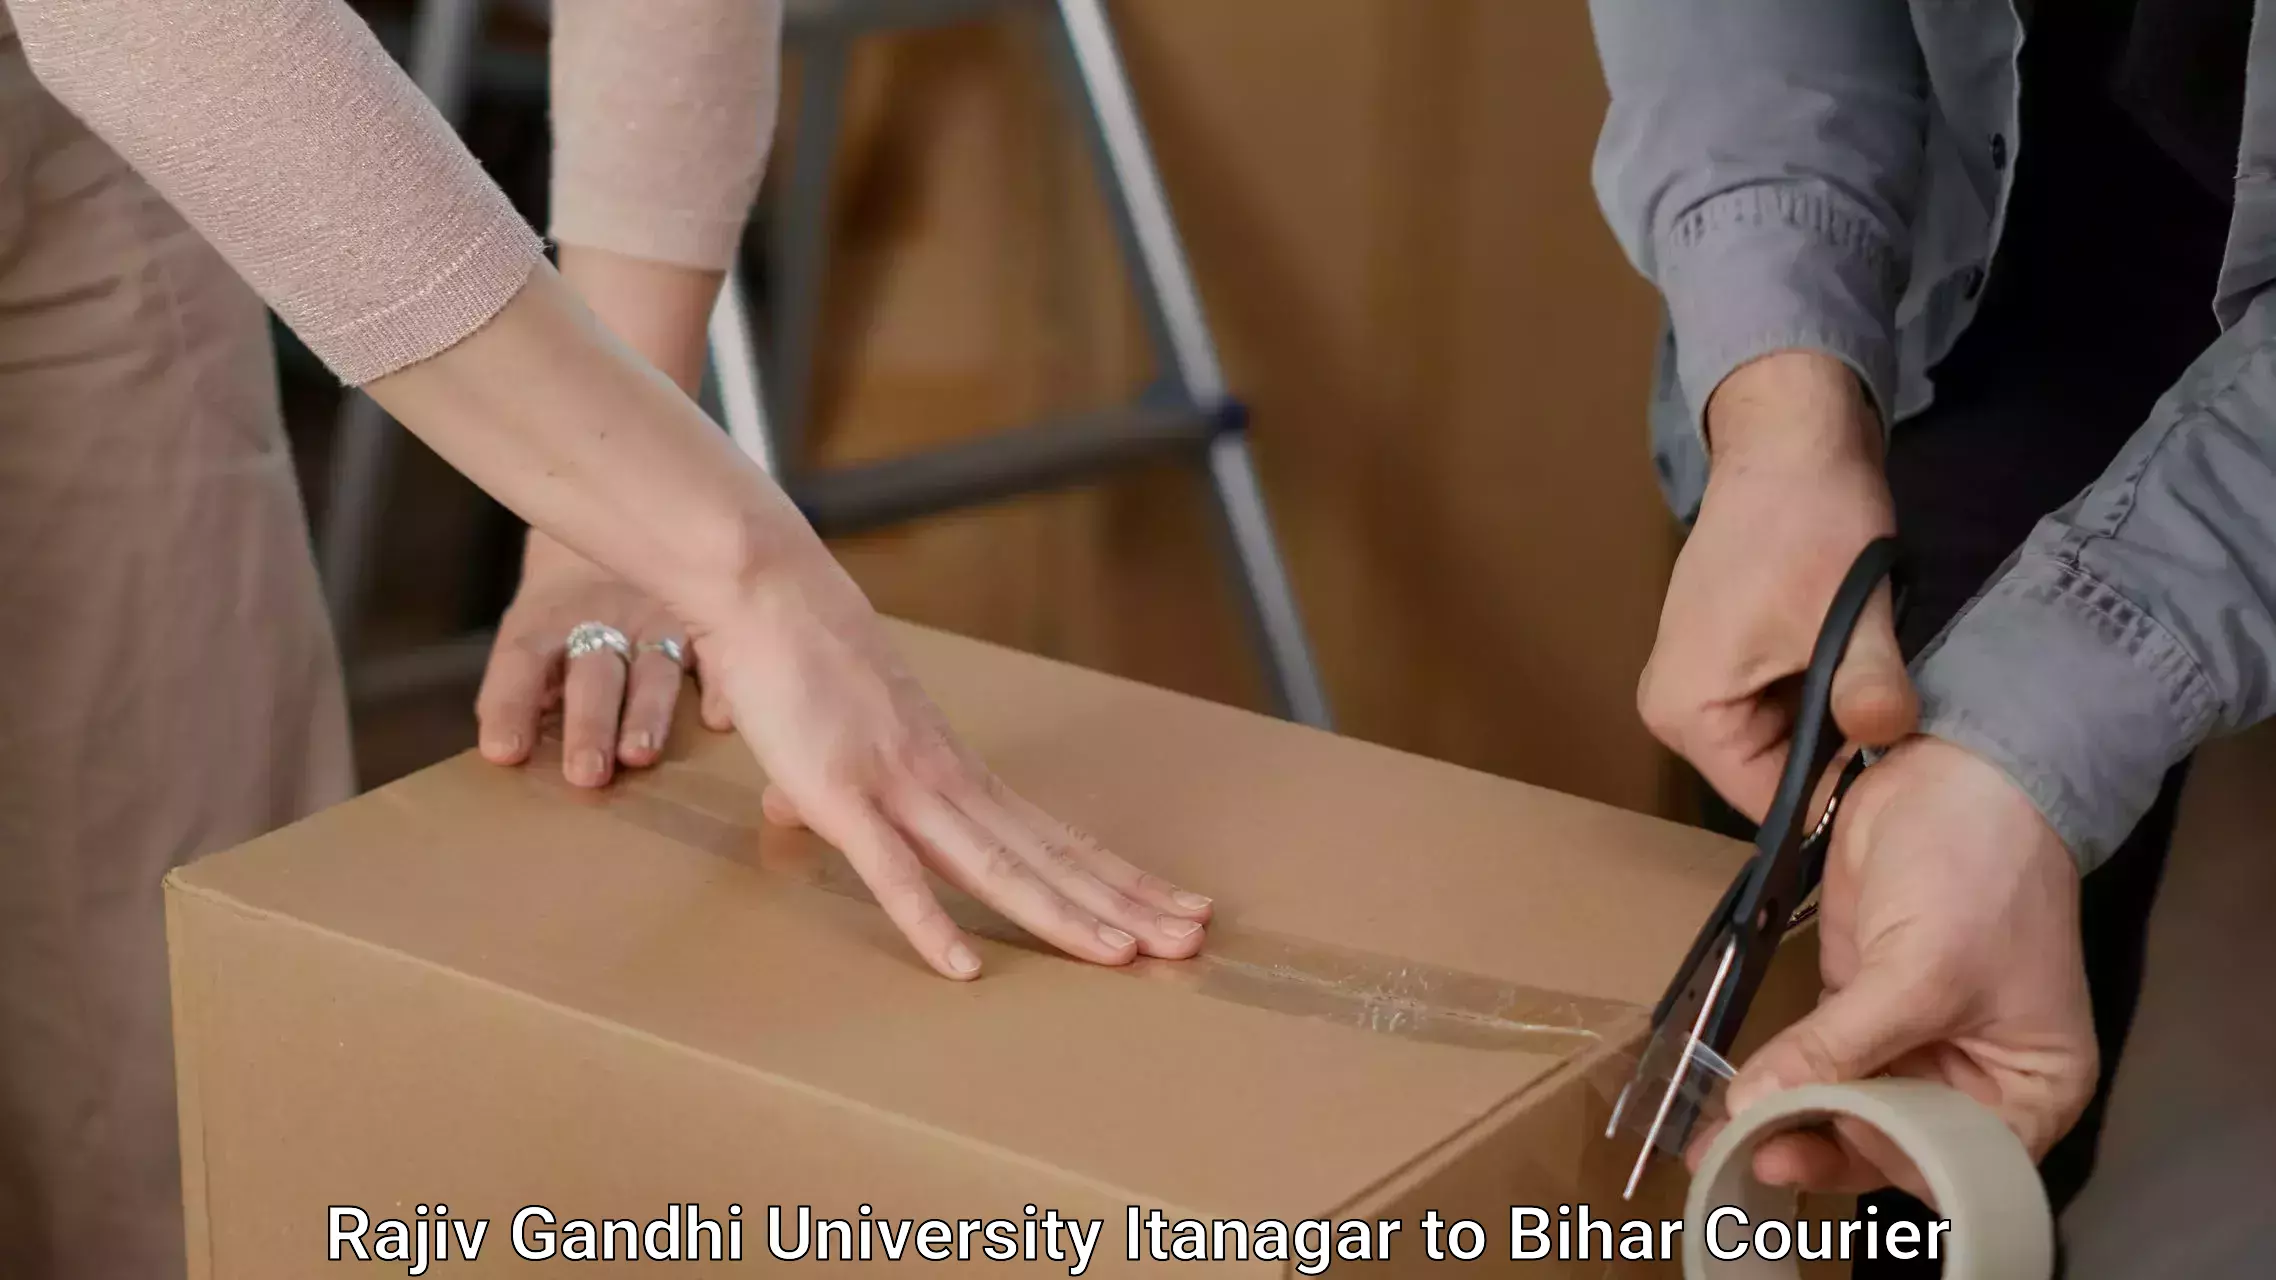 Furniture moving plans Rajiv Gandhi University Itanagar to Ramnagar Champaran